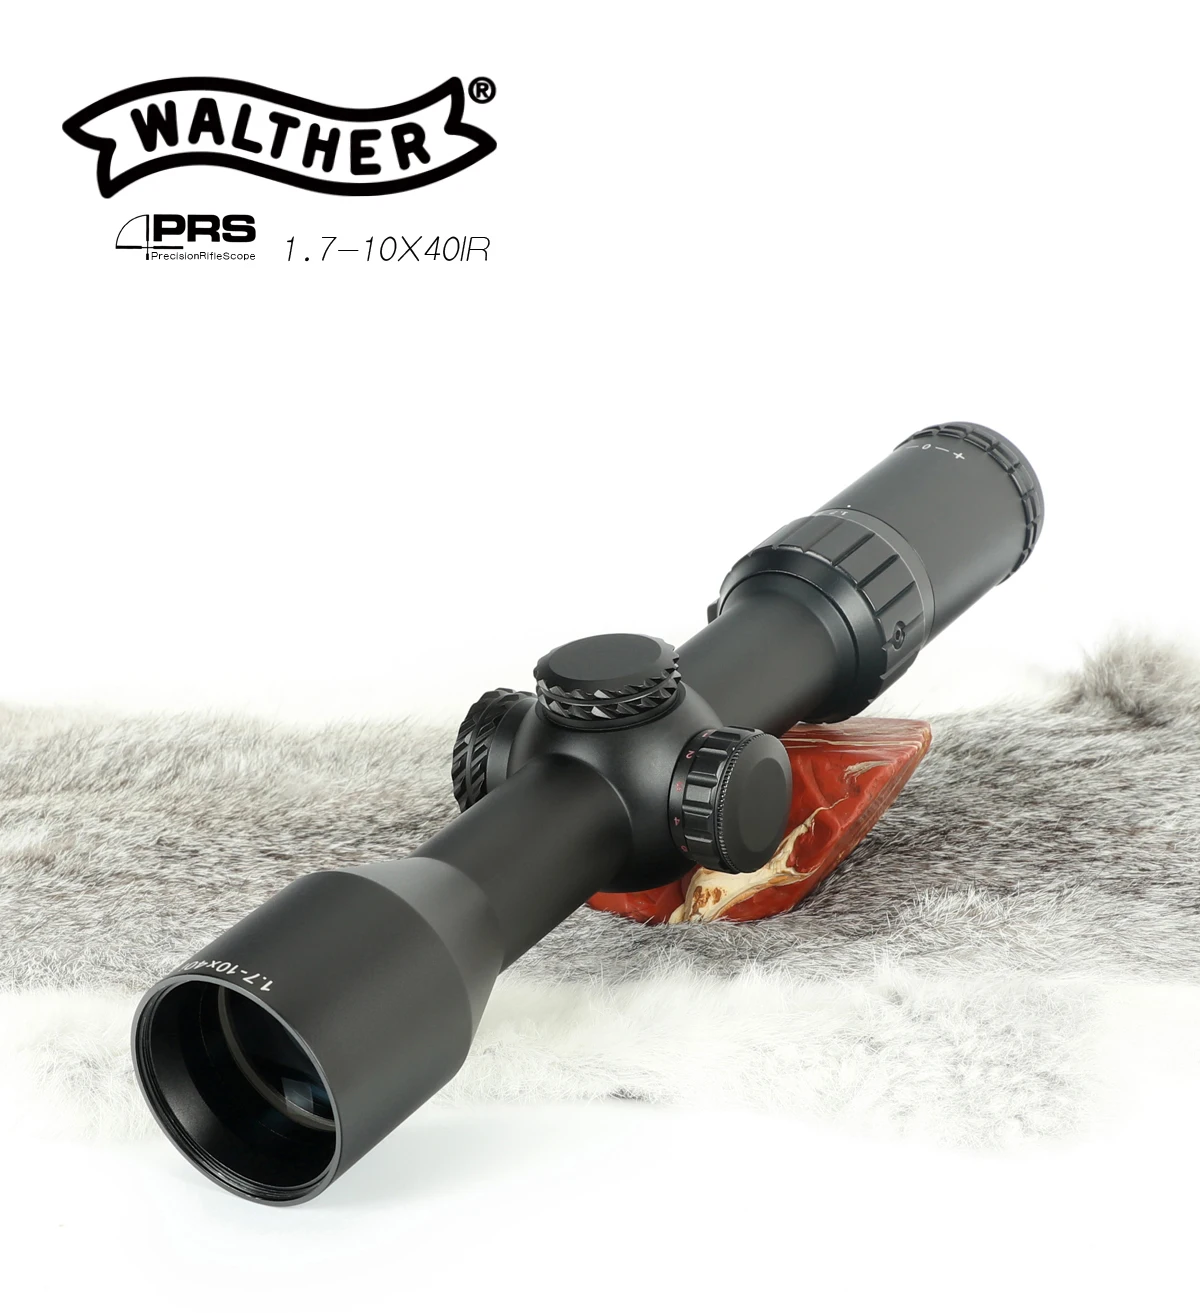 Охотничий Walther оптический прицел PRS 1,7-10X40IR оптический прицел охотничий Оптический красный точечный зеленый точечный охотничий пистолет